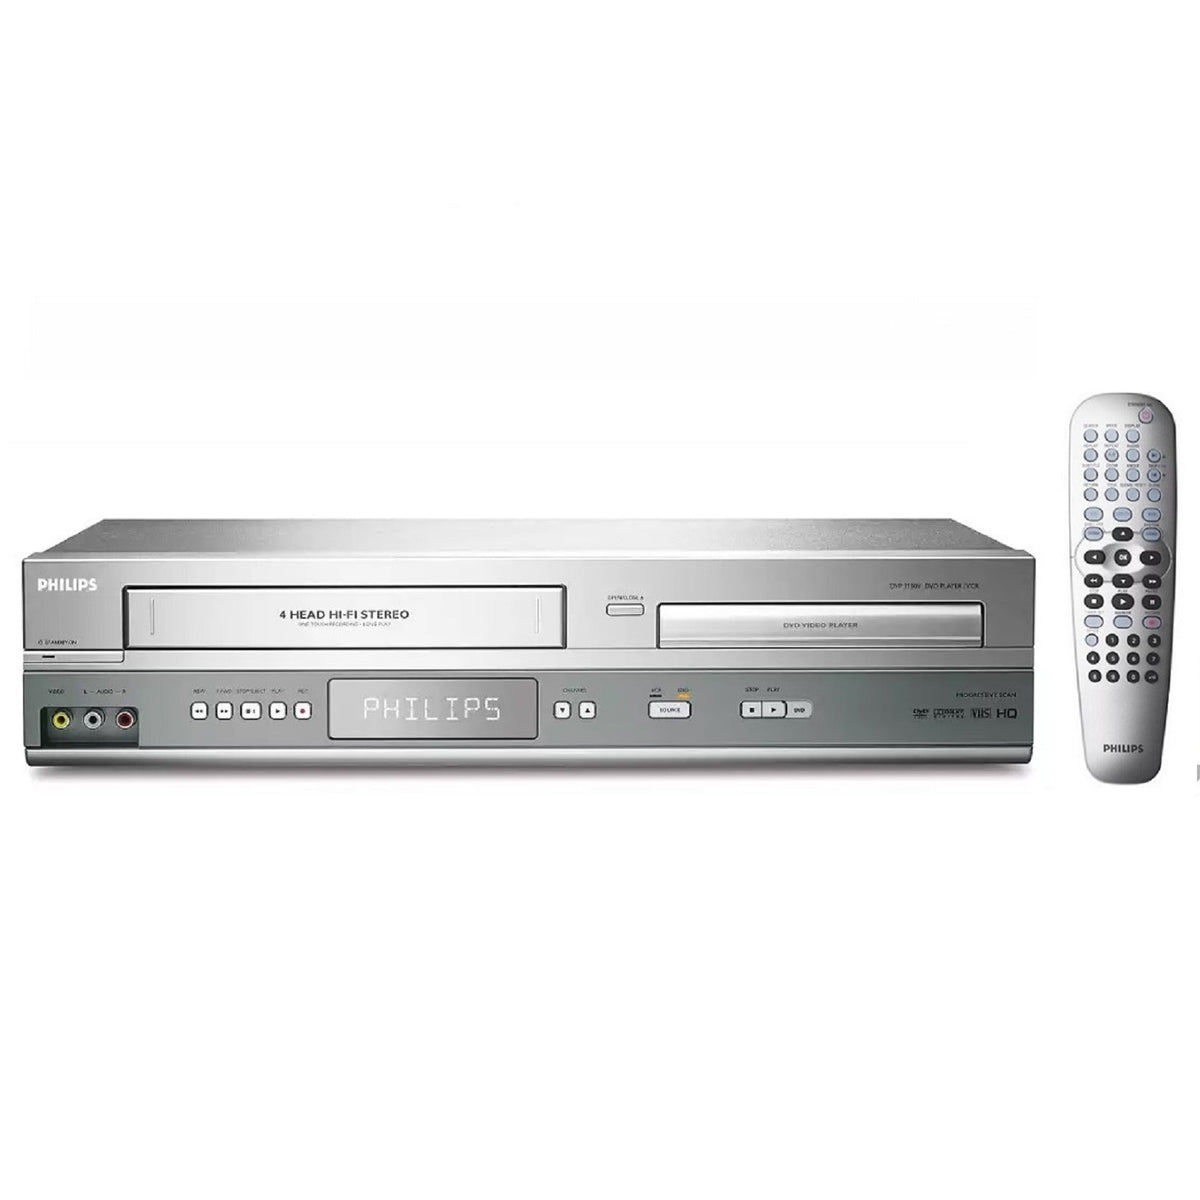 Vertrek naar rooster vergeetachtig Philips DVP3345V/17 DVD VCR/VHS Combo Player For Sale | TekRevolt